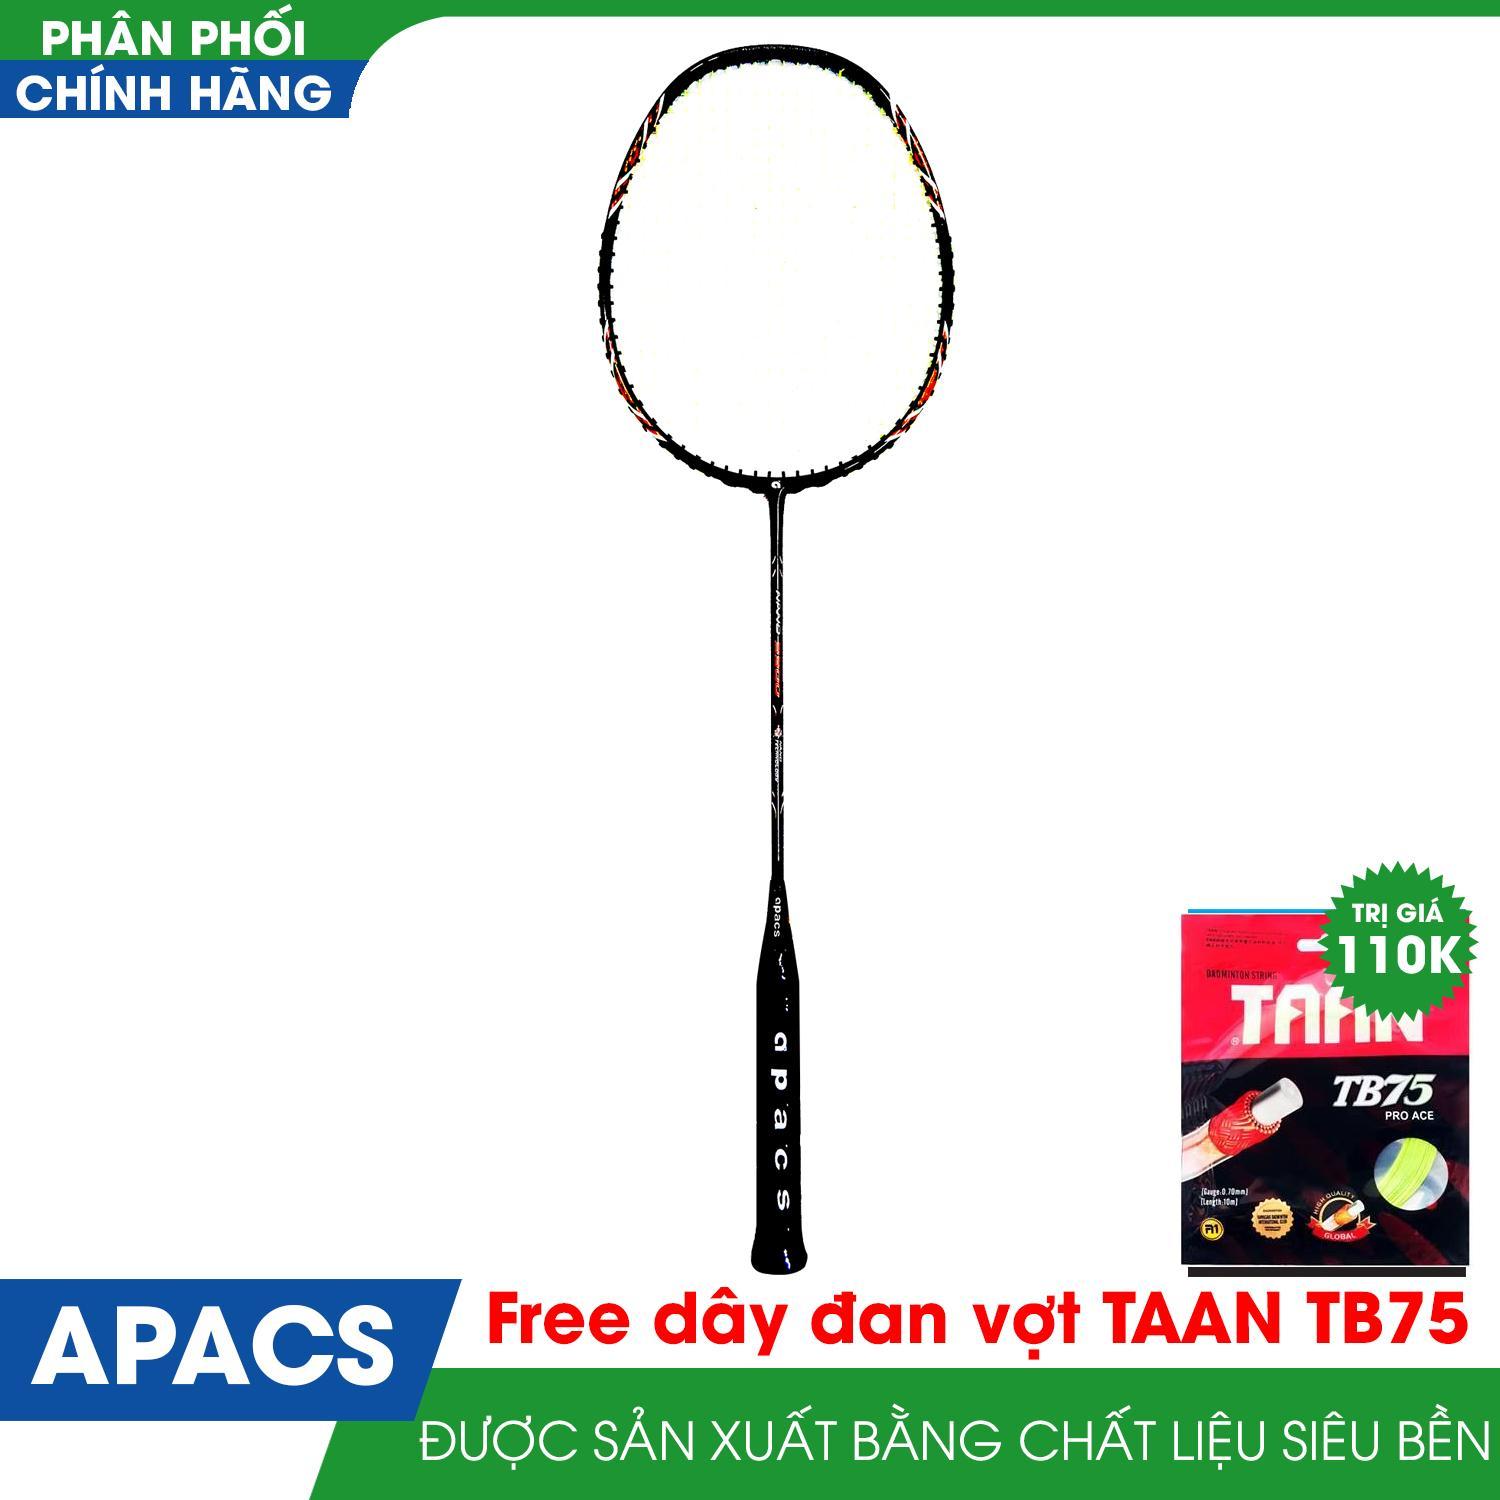 Vợt cầu lông APACS NANO 9900 new Đen đỏ Tặng kèm dây đan vợt +quấn cán vợt